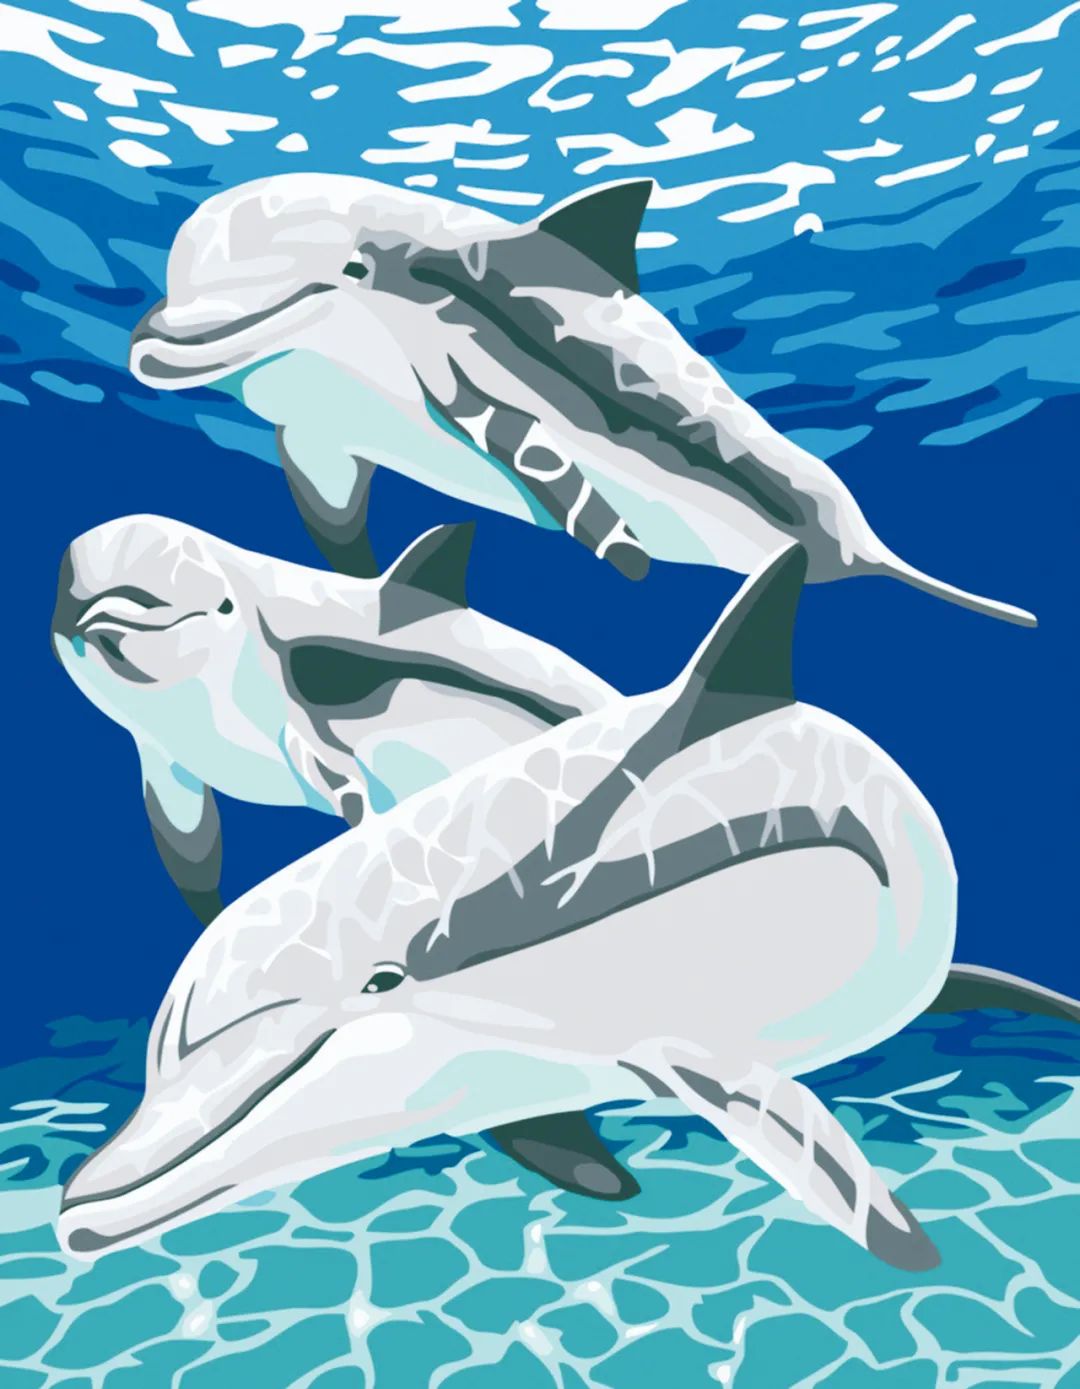 保护海豚手抄报_小海豚 漫画 环保 中国少年报_海洋环保漫画